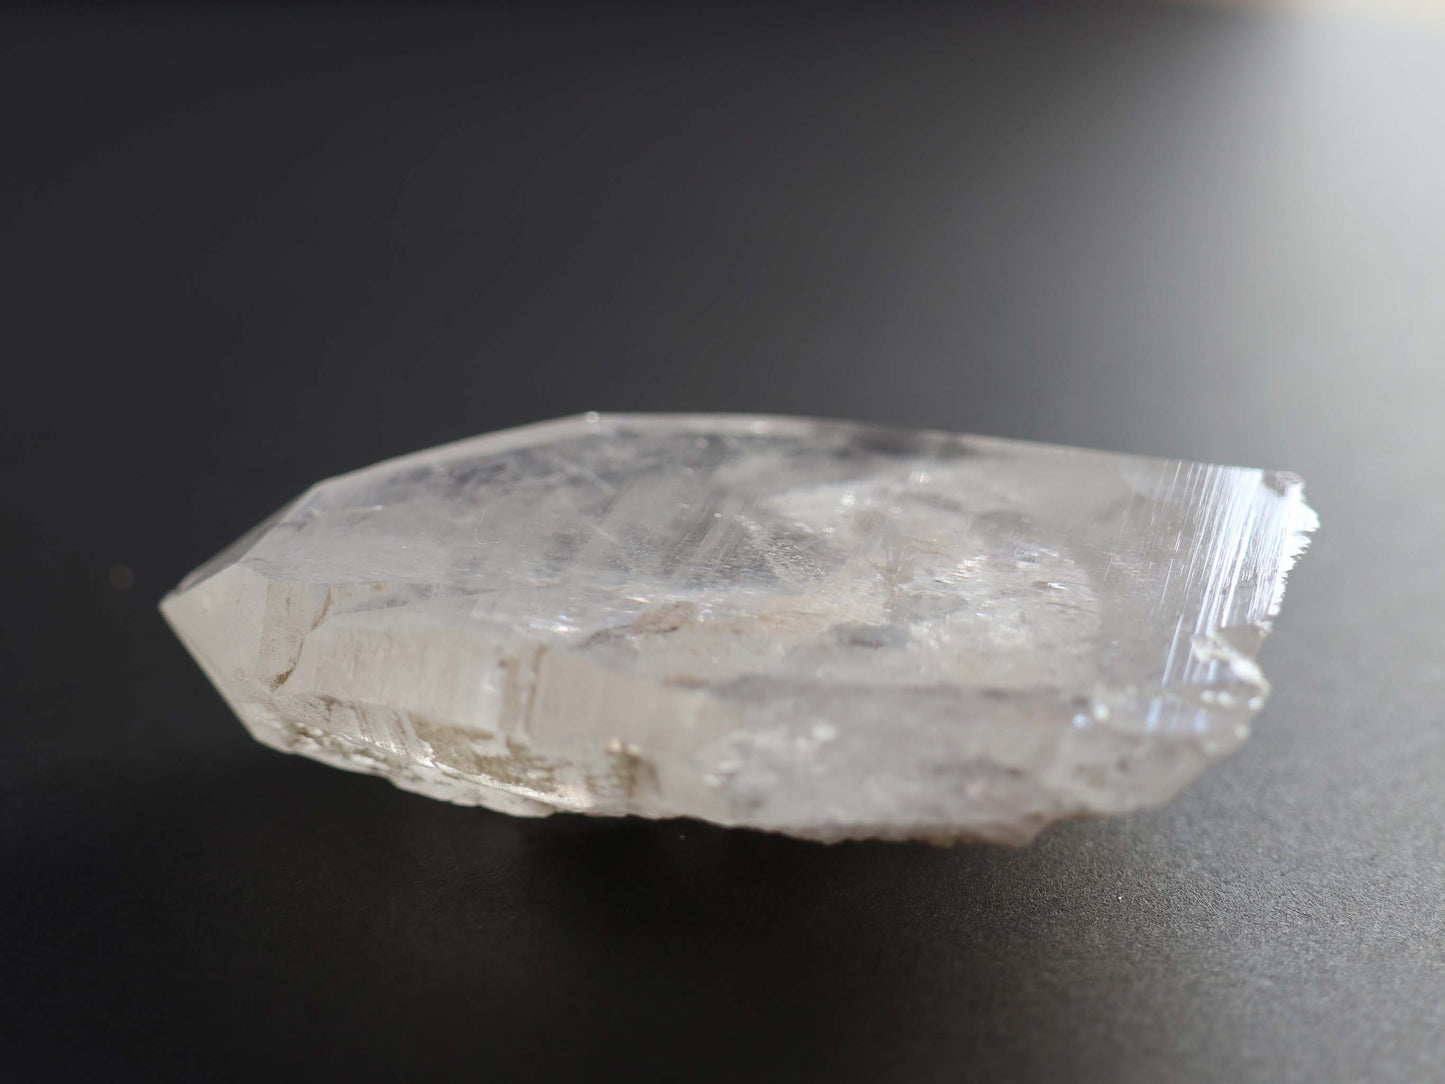 タビュラー、イシス、ガネーシュヒマール産 ヒマラヤ 水晶原石PN:GG-061